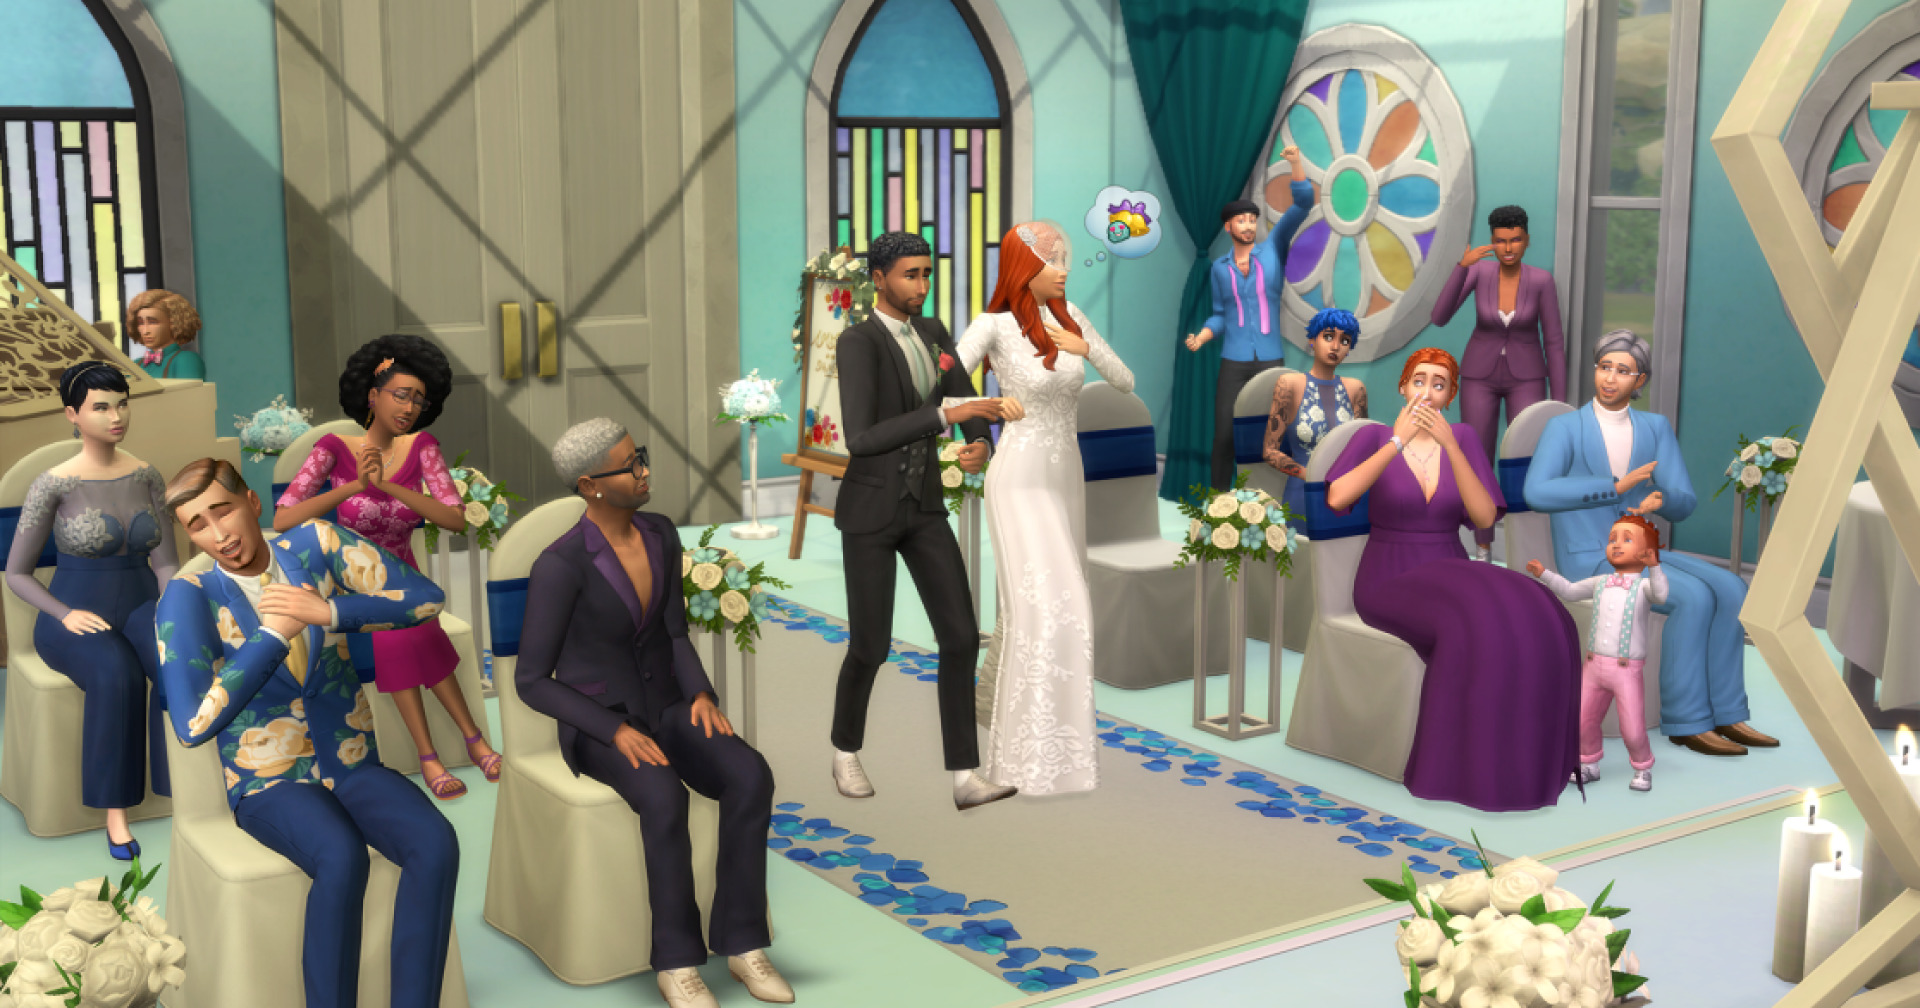 My Wedding Stories เนื้อหาเสริมของ The Sims 4 วางจำหน่ายในรัสเซียได้แล้ว